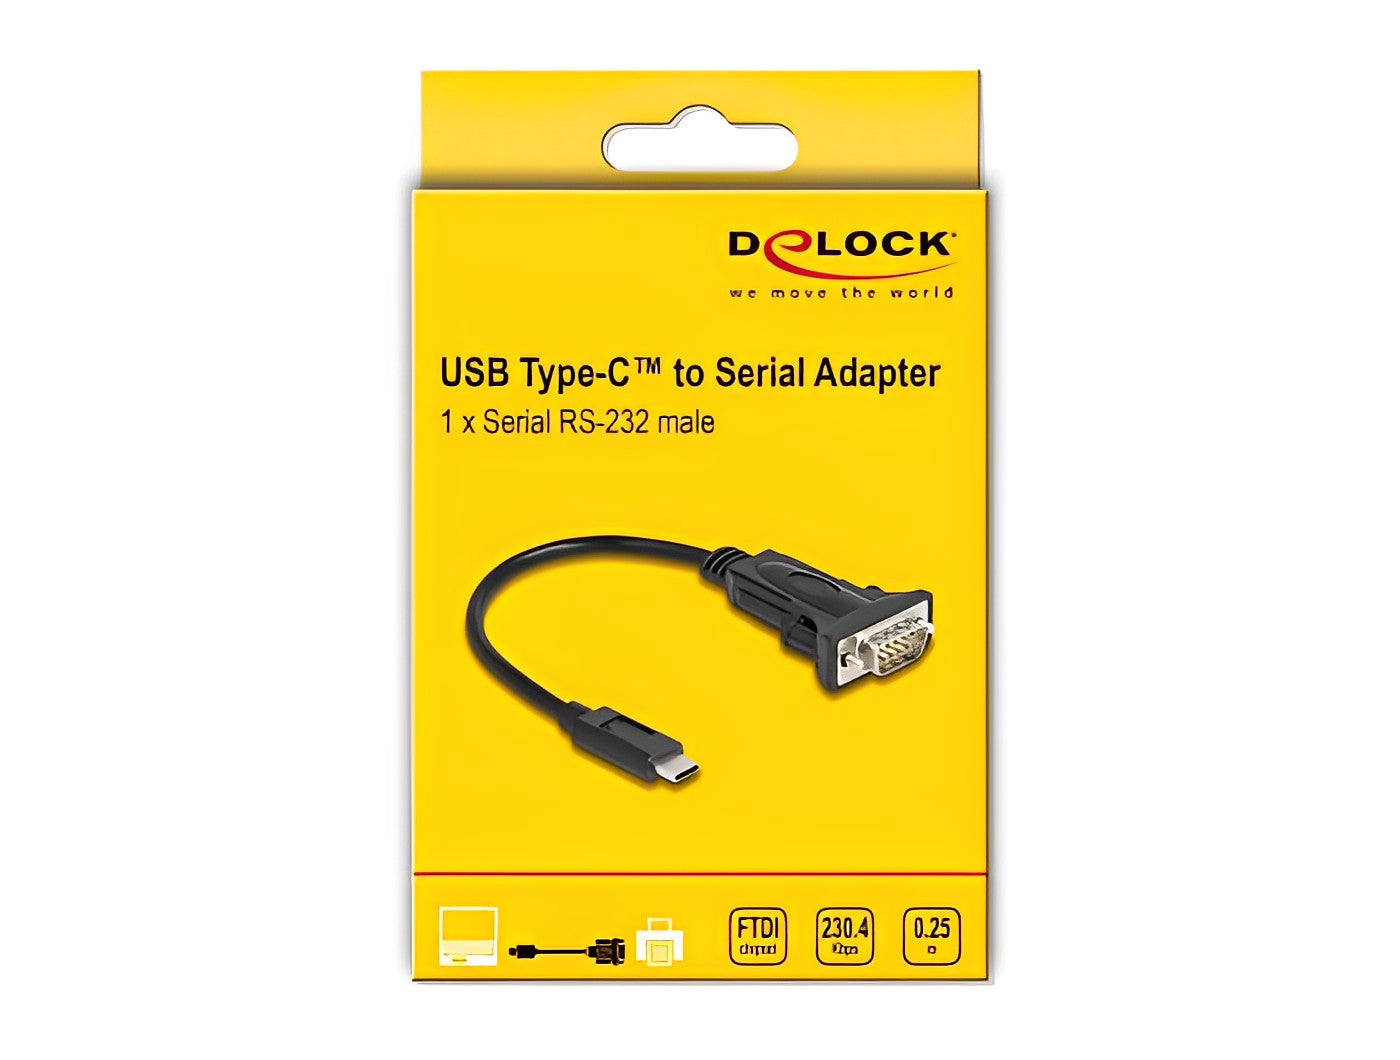 ממיר USB-C זכר לתקע DB9 Serial RS-232 צ'יפ FTDI אורך 25 ס"מ - delock.israel